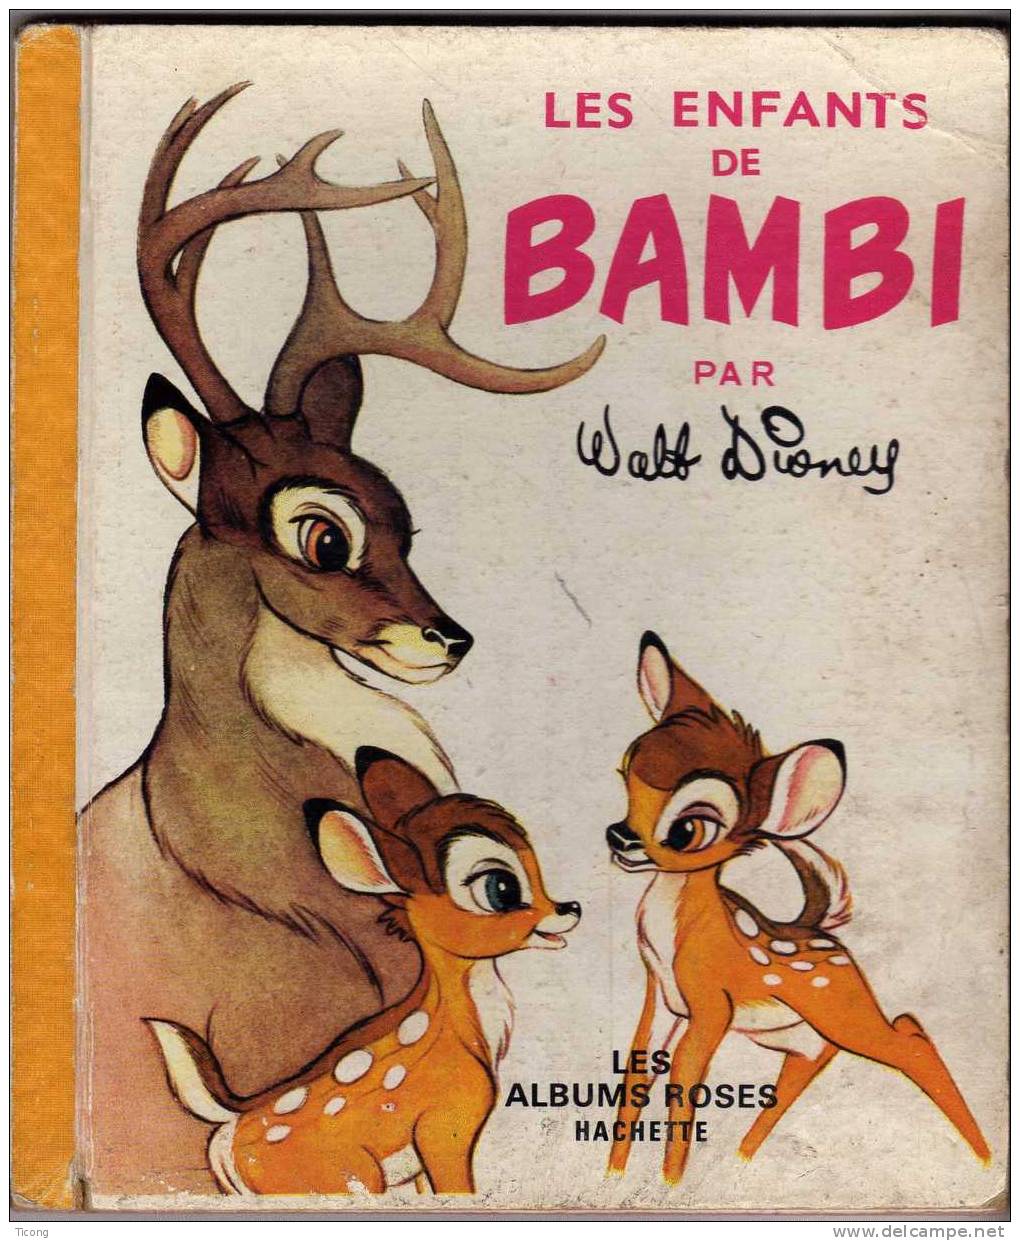 LES ALBUMS ROSES HACHETTE - LES ENFANTS DE BAMBI ( DISNEY ) EDITION CARTONNEE 1964 - Disney